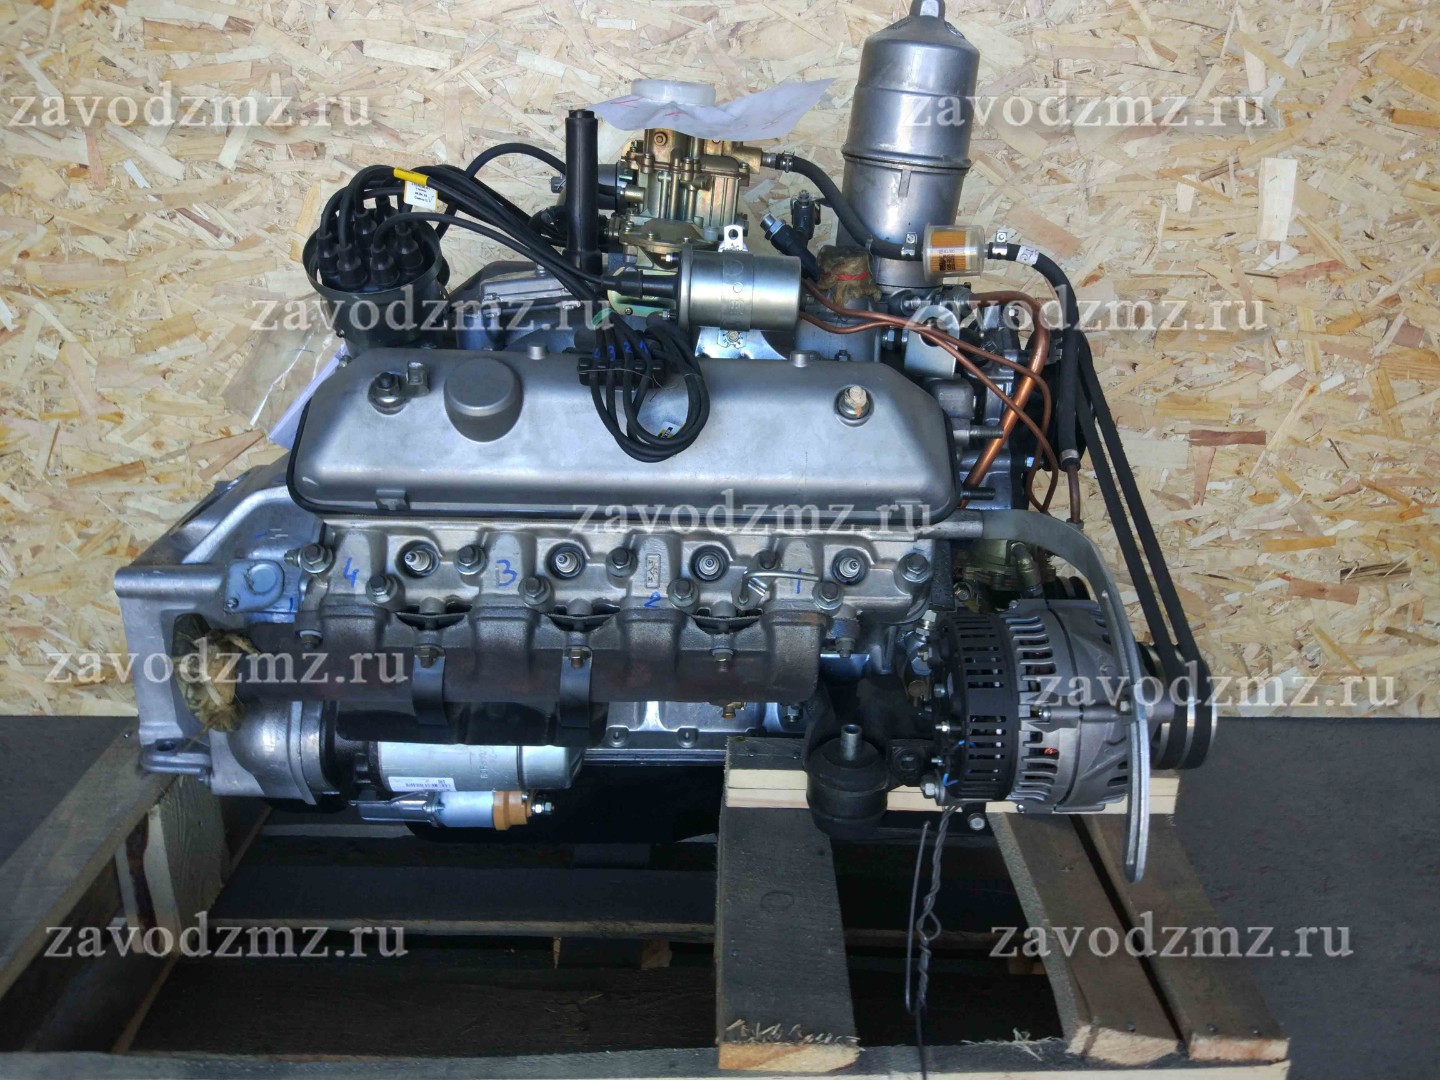 Двигатель ЗМЗ 523100 карбюраторный бензин | ZAVODZMZ